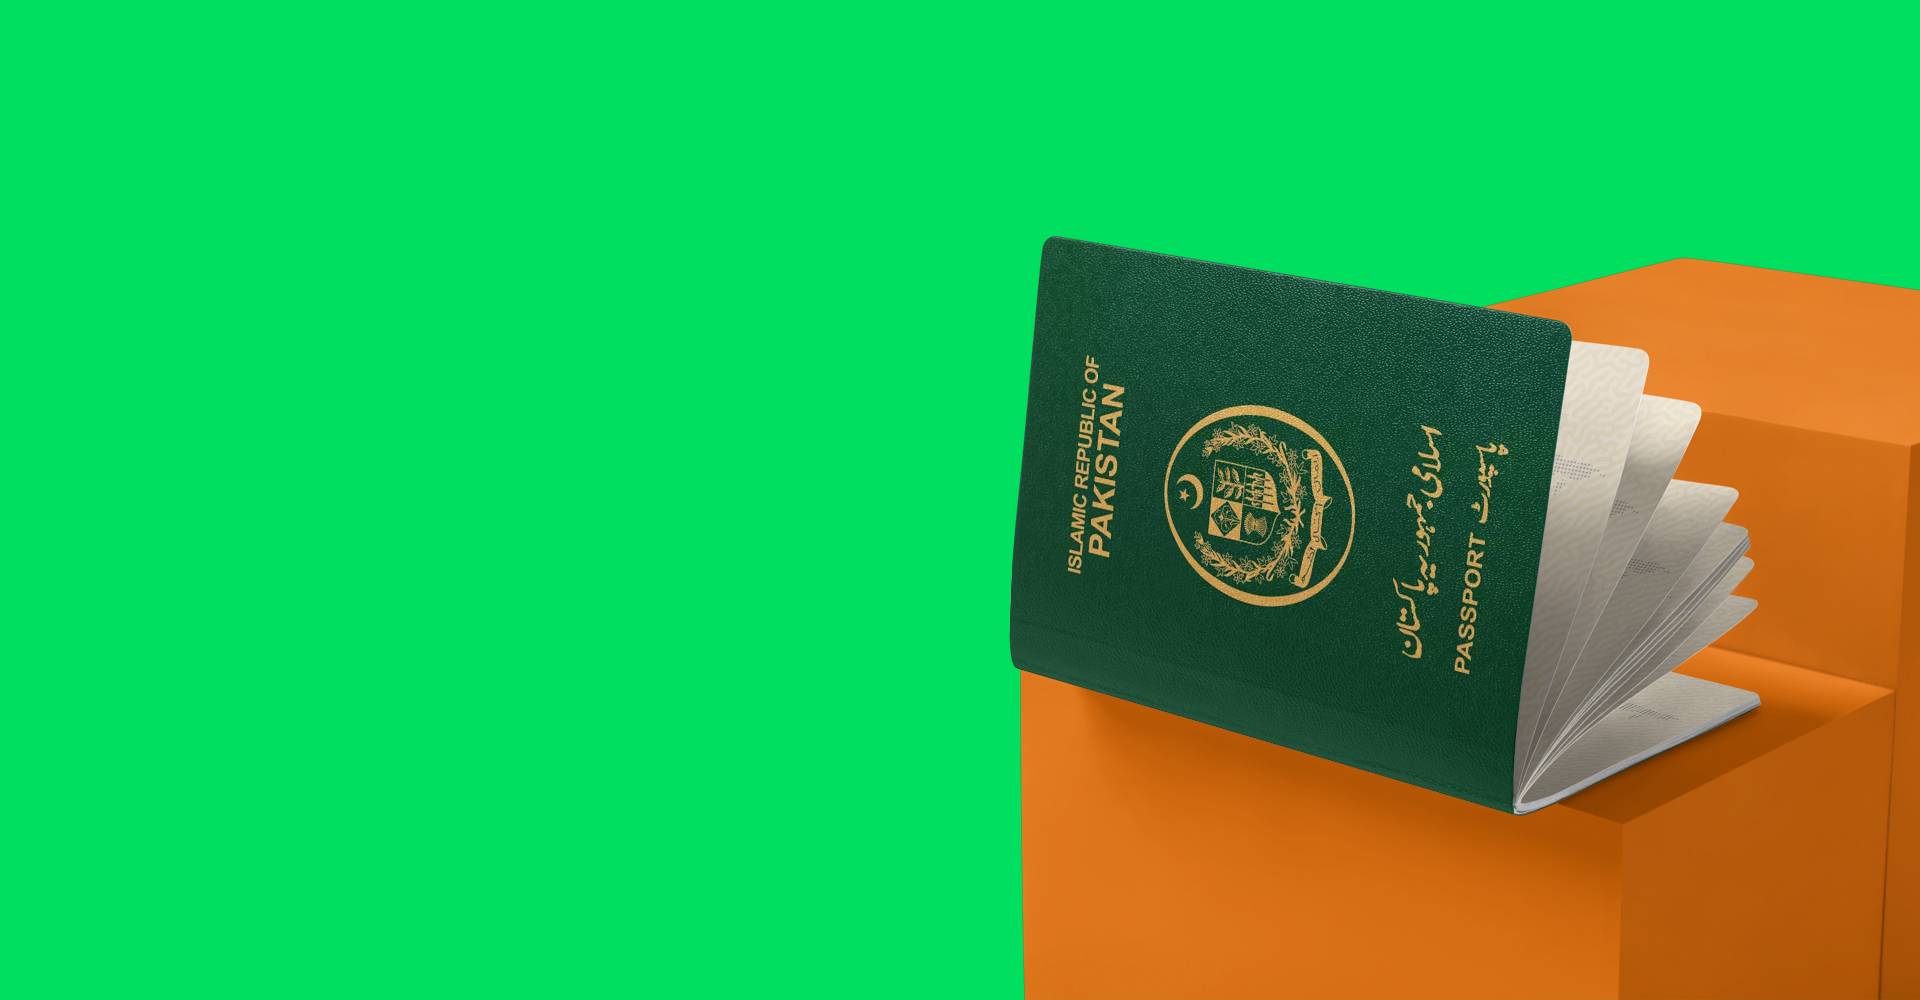 Pakistan Passport on Box